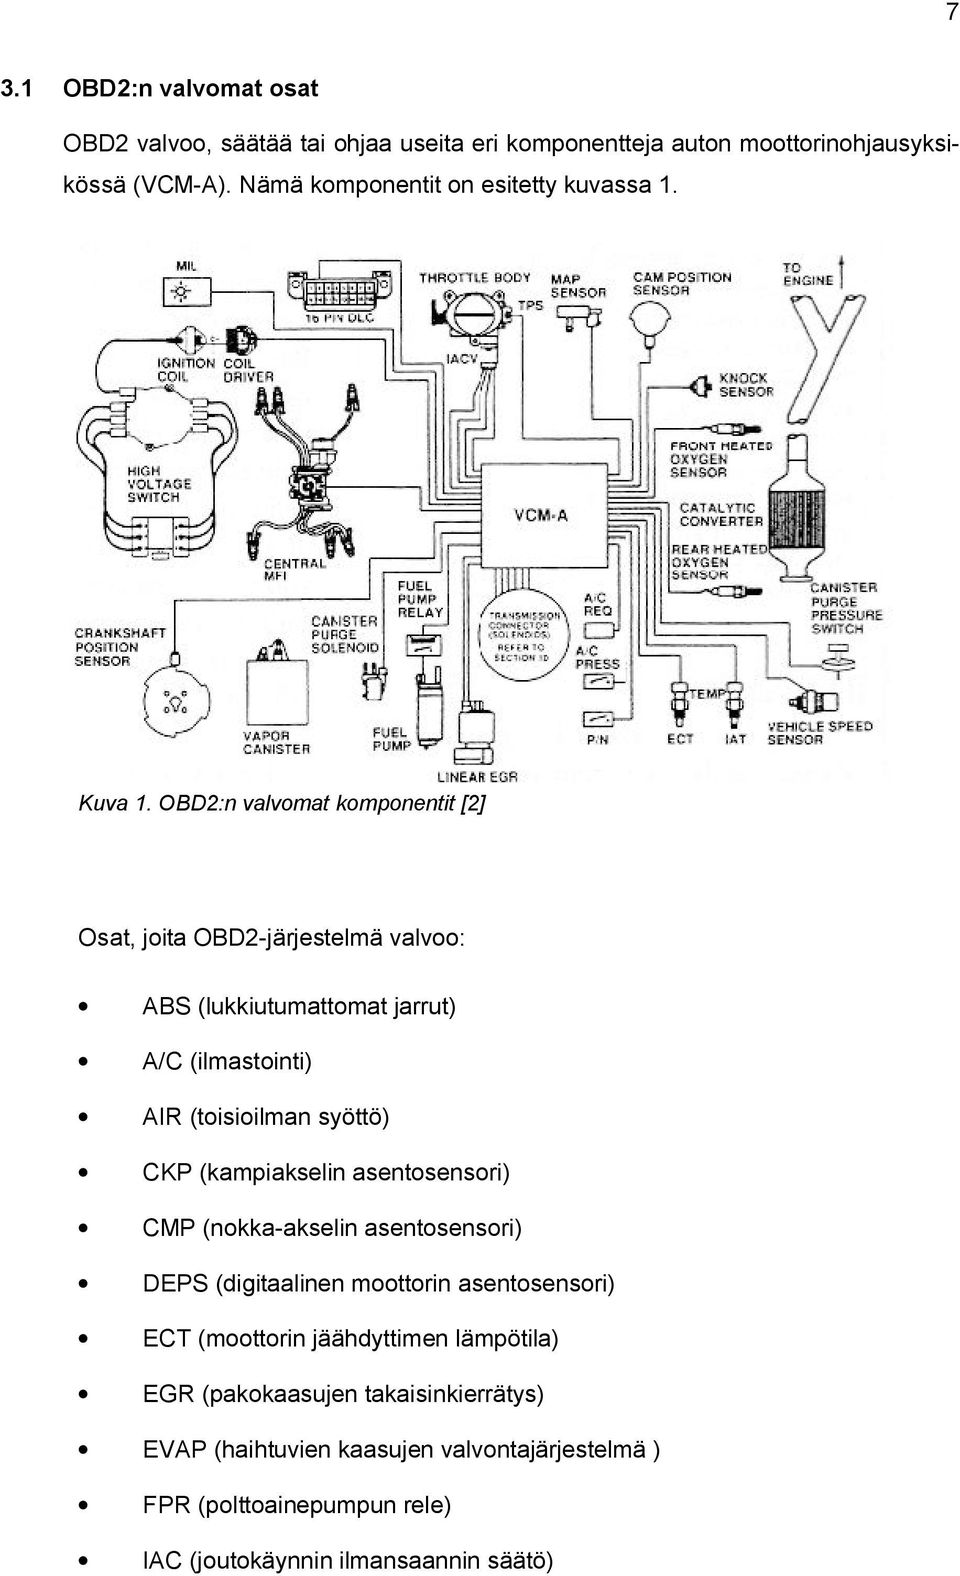 OBD2:n valvomat komponentit [2] Osat, joita OBD2-järjestelmä valvoo: ABS (lukkiutumattomat jarrut) A/C (ilmastointi) AIR (toisioilman syöttö) CKP